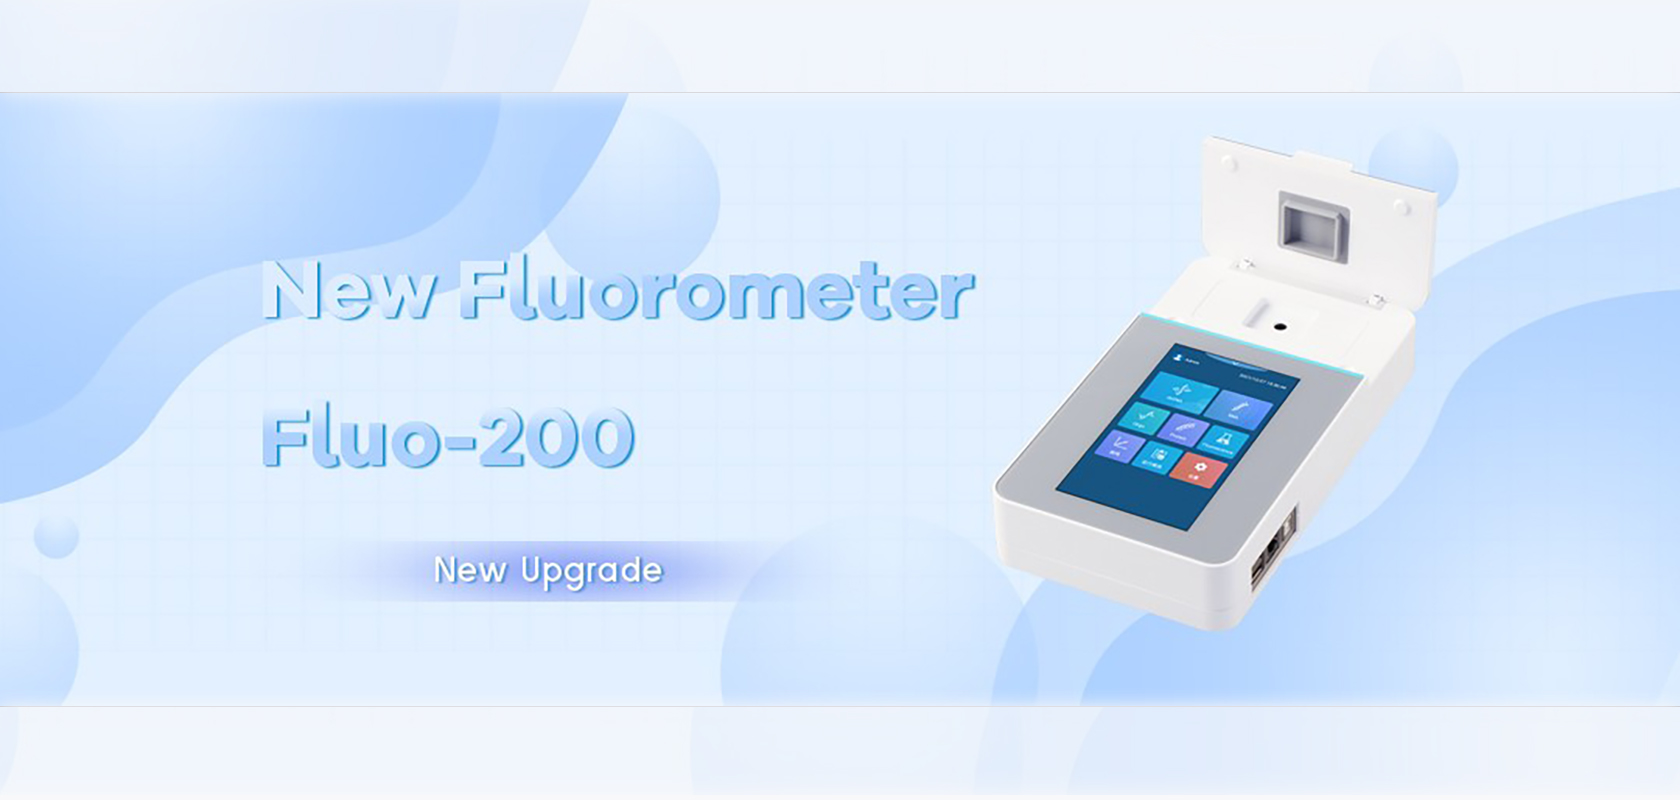 New Member of Fluorometer Family - Fluo-200